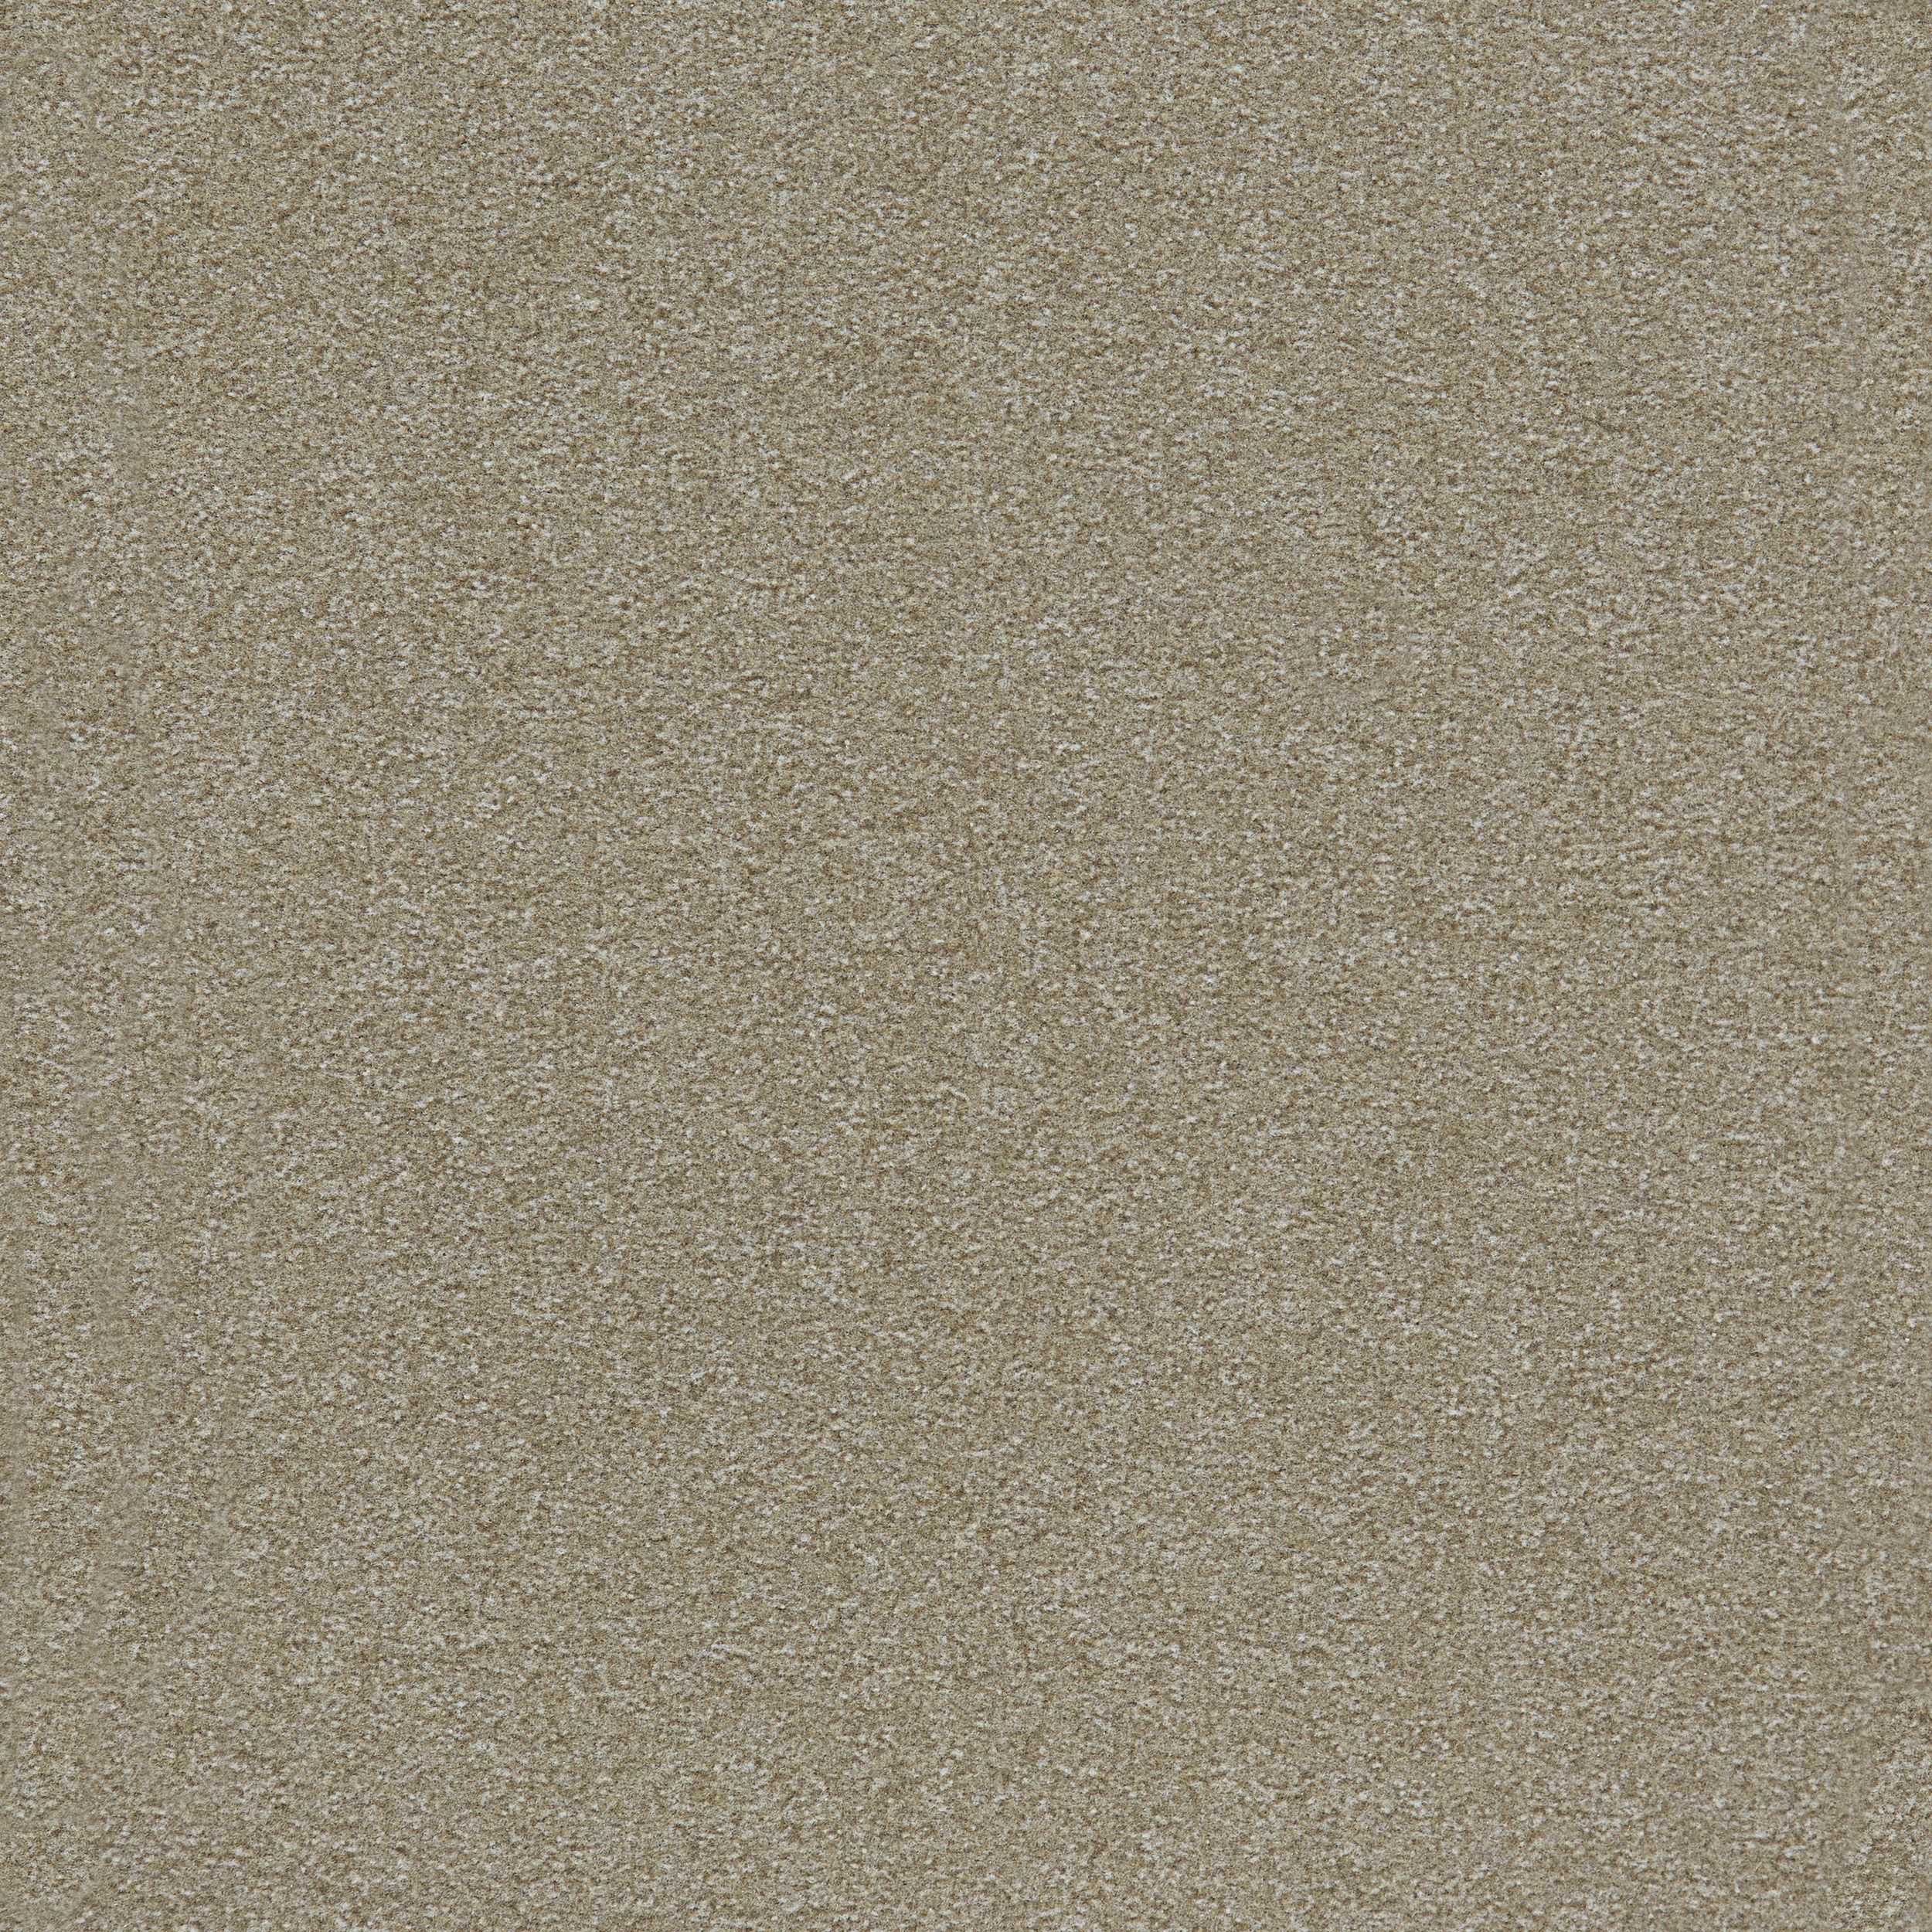 image Heuga 725 Carpet Tile In Oyster numéro 7